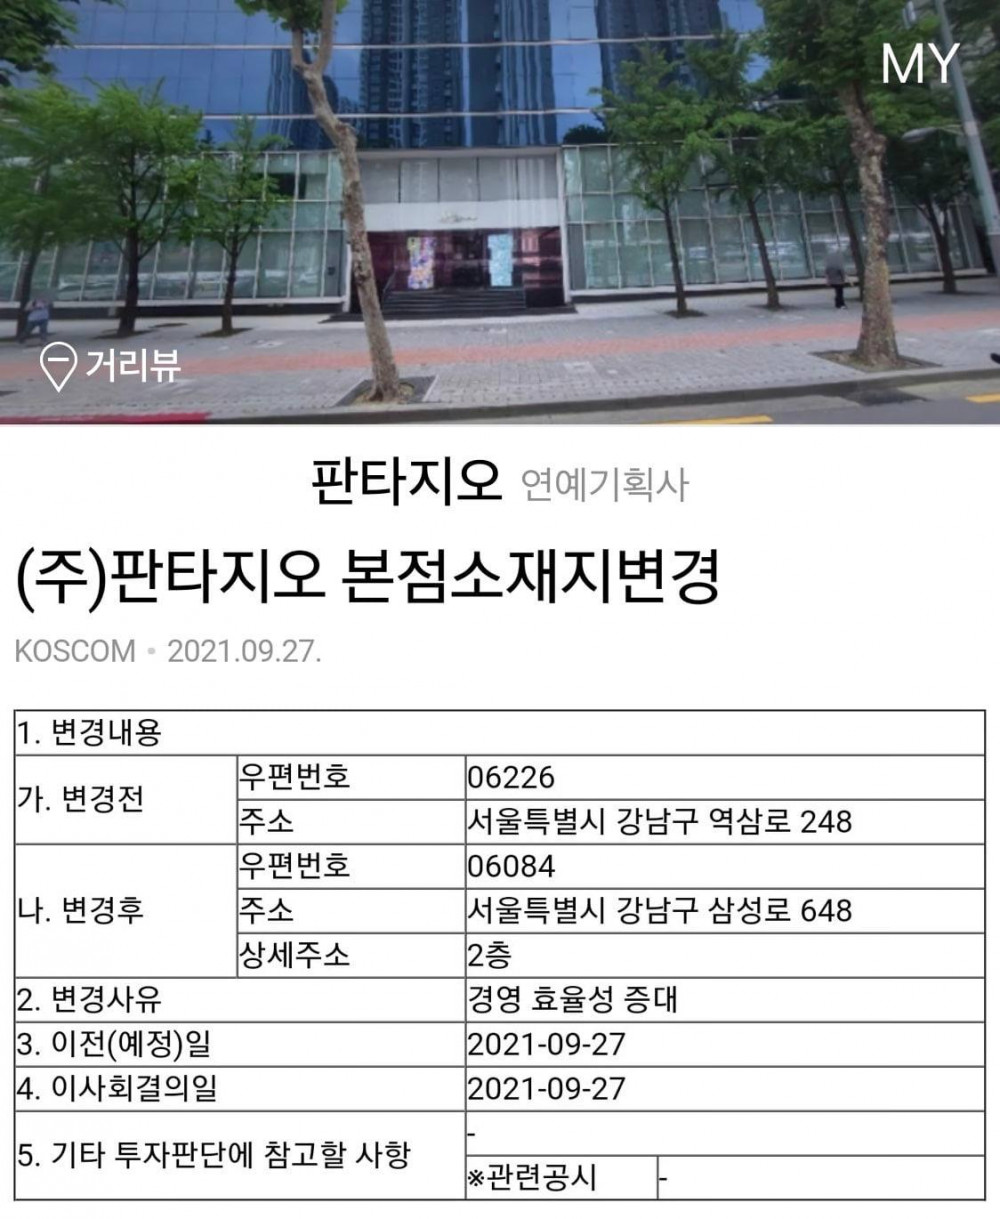 Нетизены удивлены переездом Fantagio в бывшее здание SM Entertainment